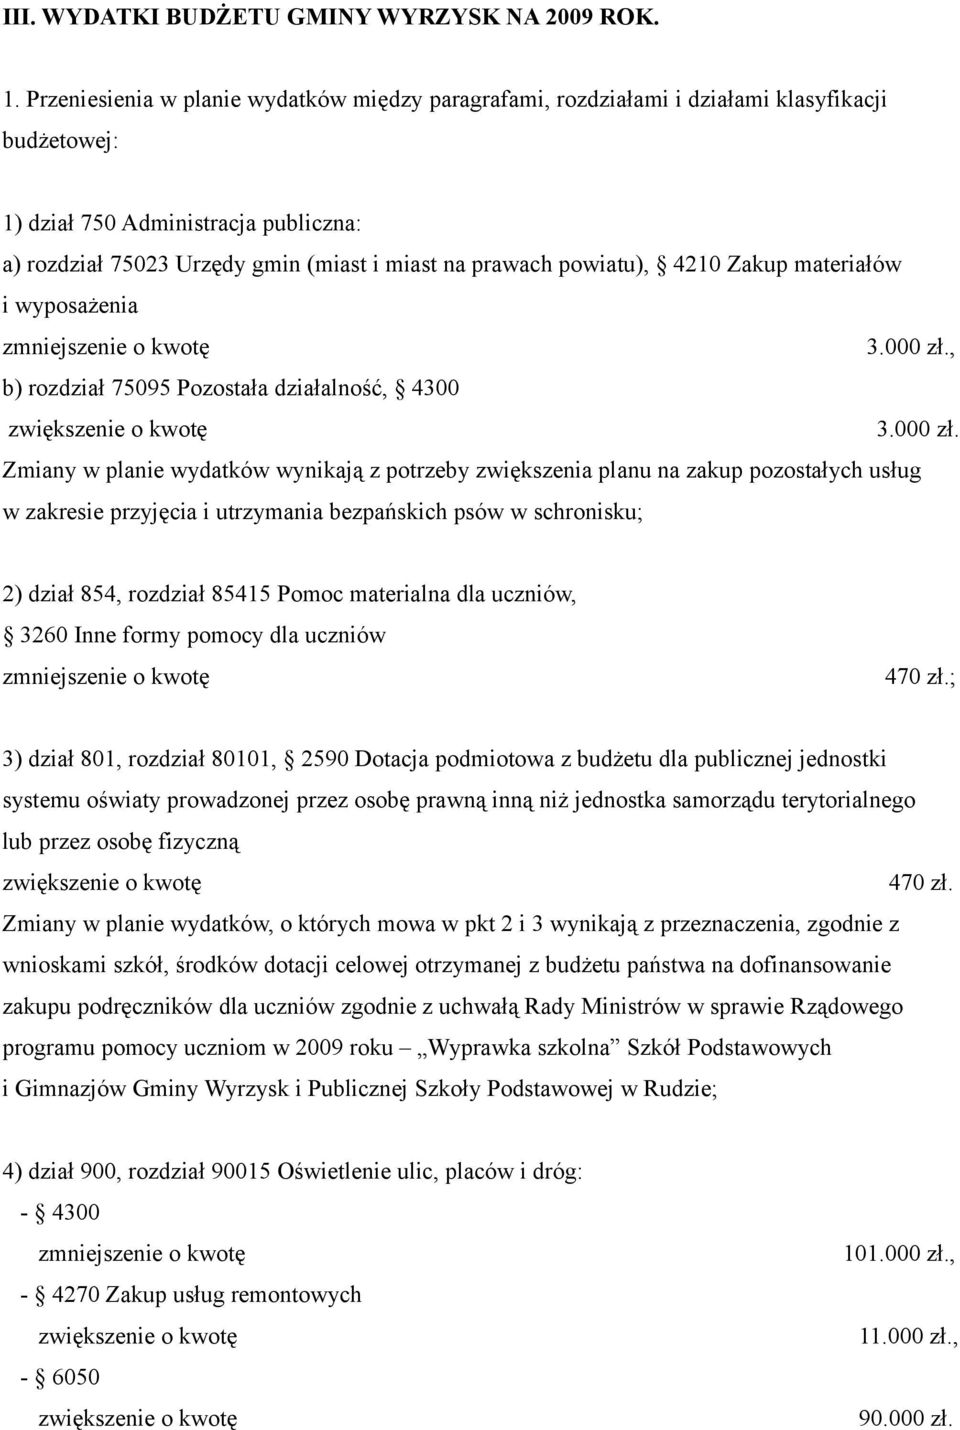 powiatu), 4210 Zakup materiałów i wyposażenia 3.000 zł.